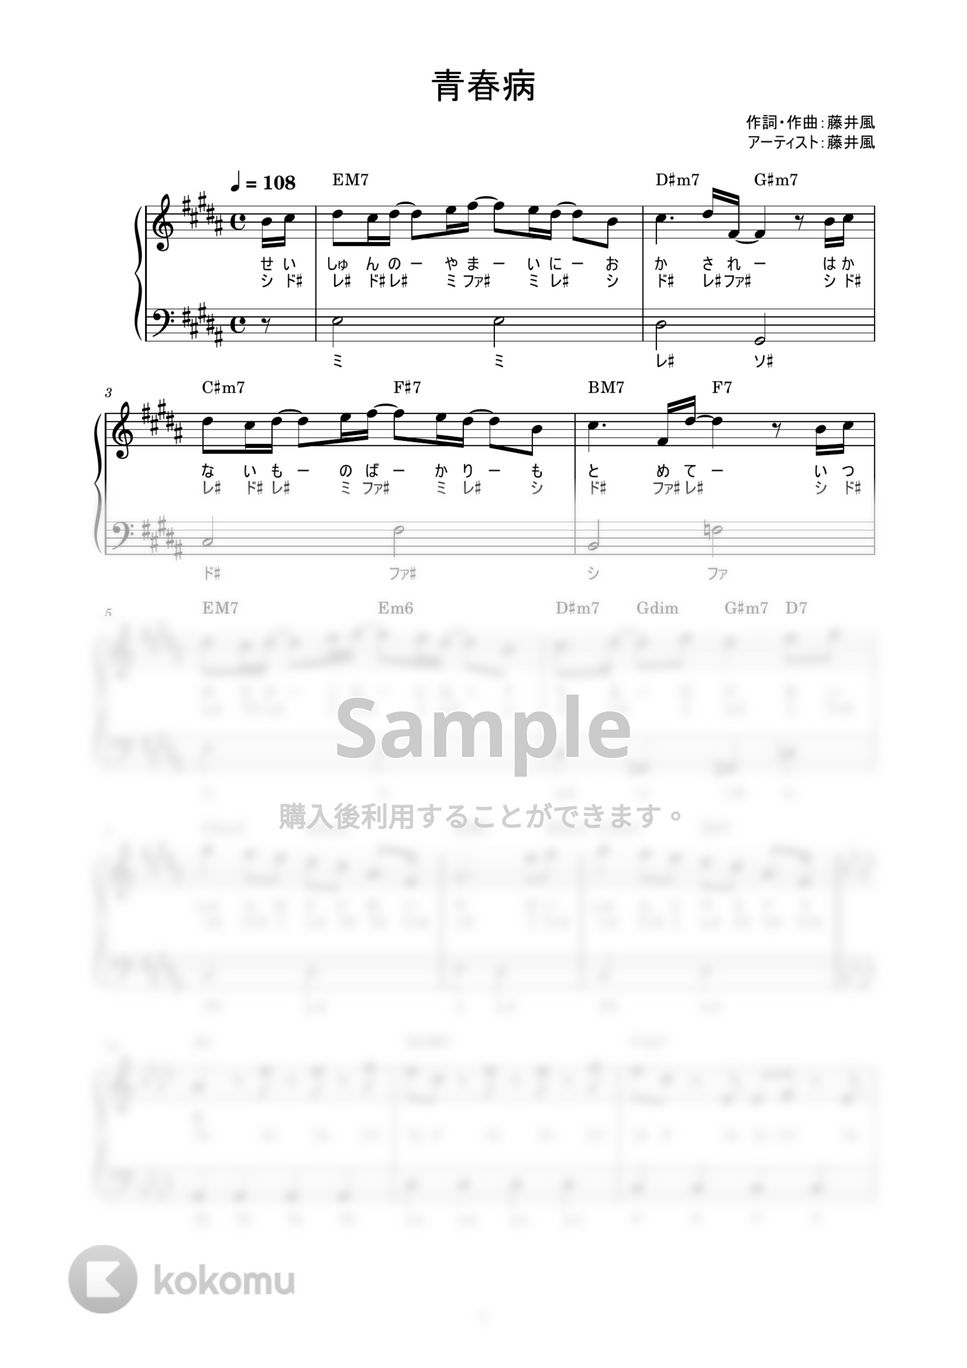 藤井風 - 青春病 (かんたん / 歌詞付き / ドレミ付き / 初心者) by piano.tokyo